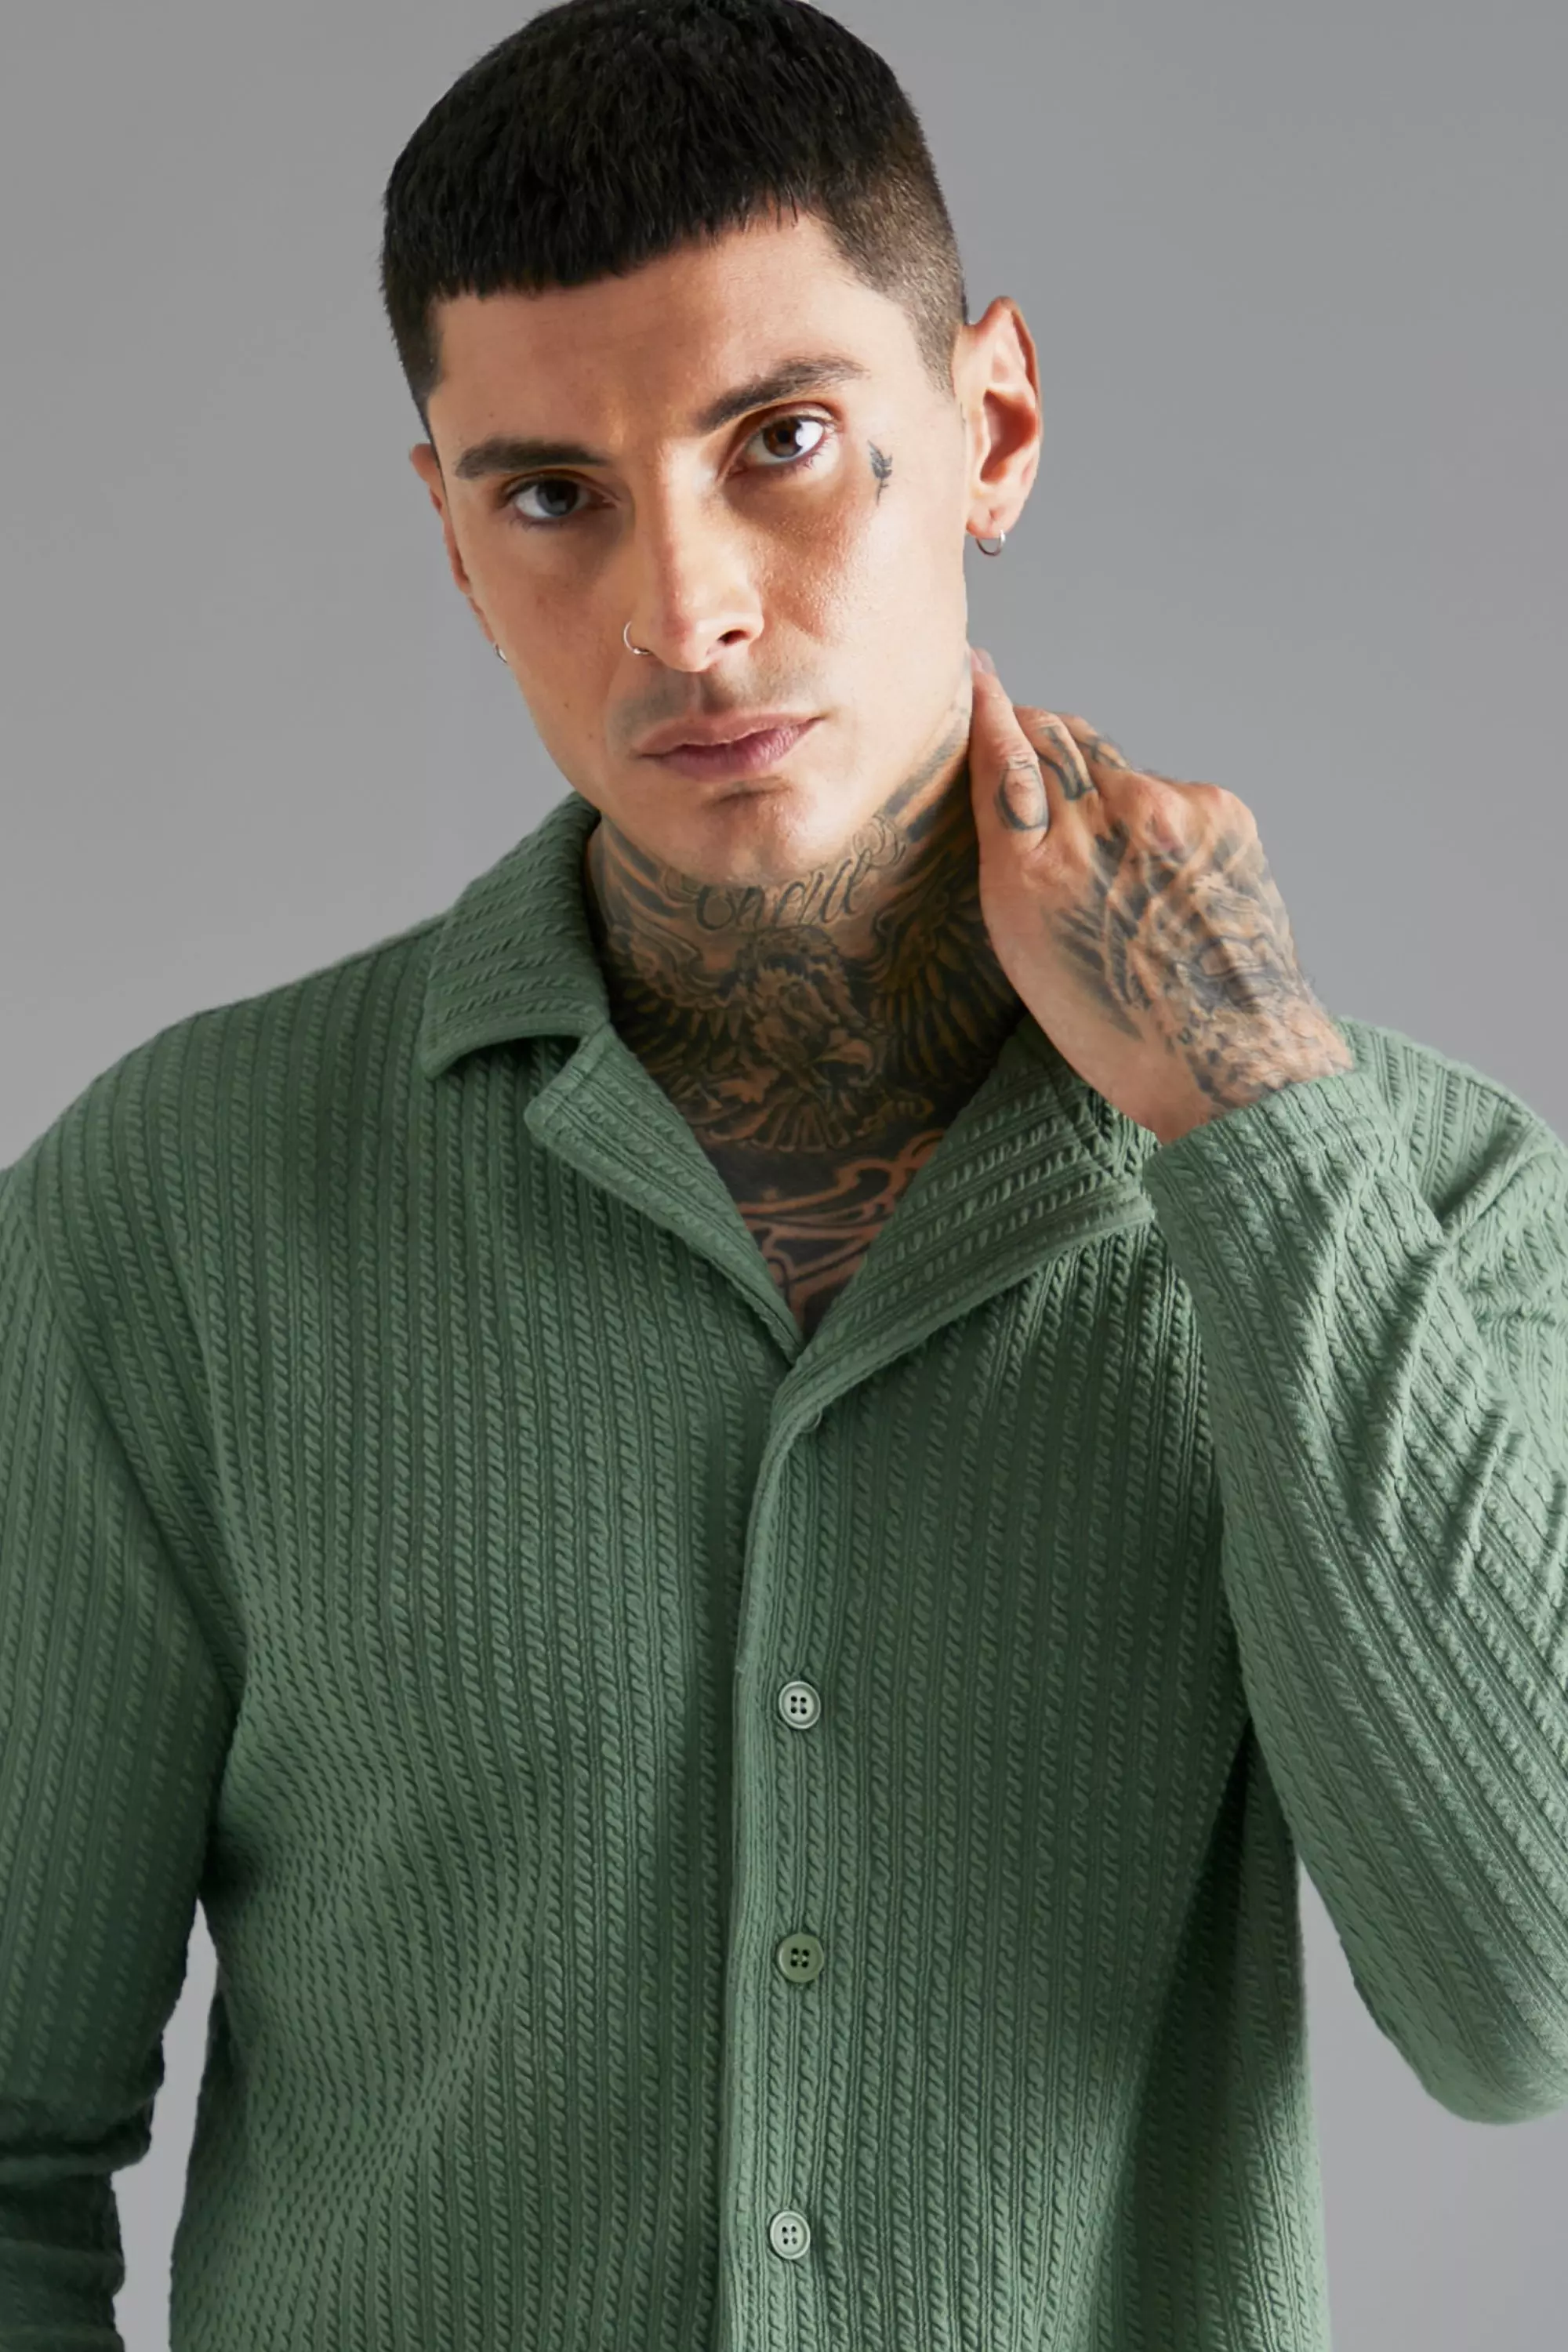 Long Sleeve Revere Knitted Crinkle Shirt